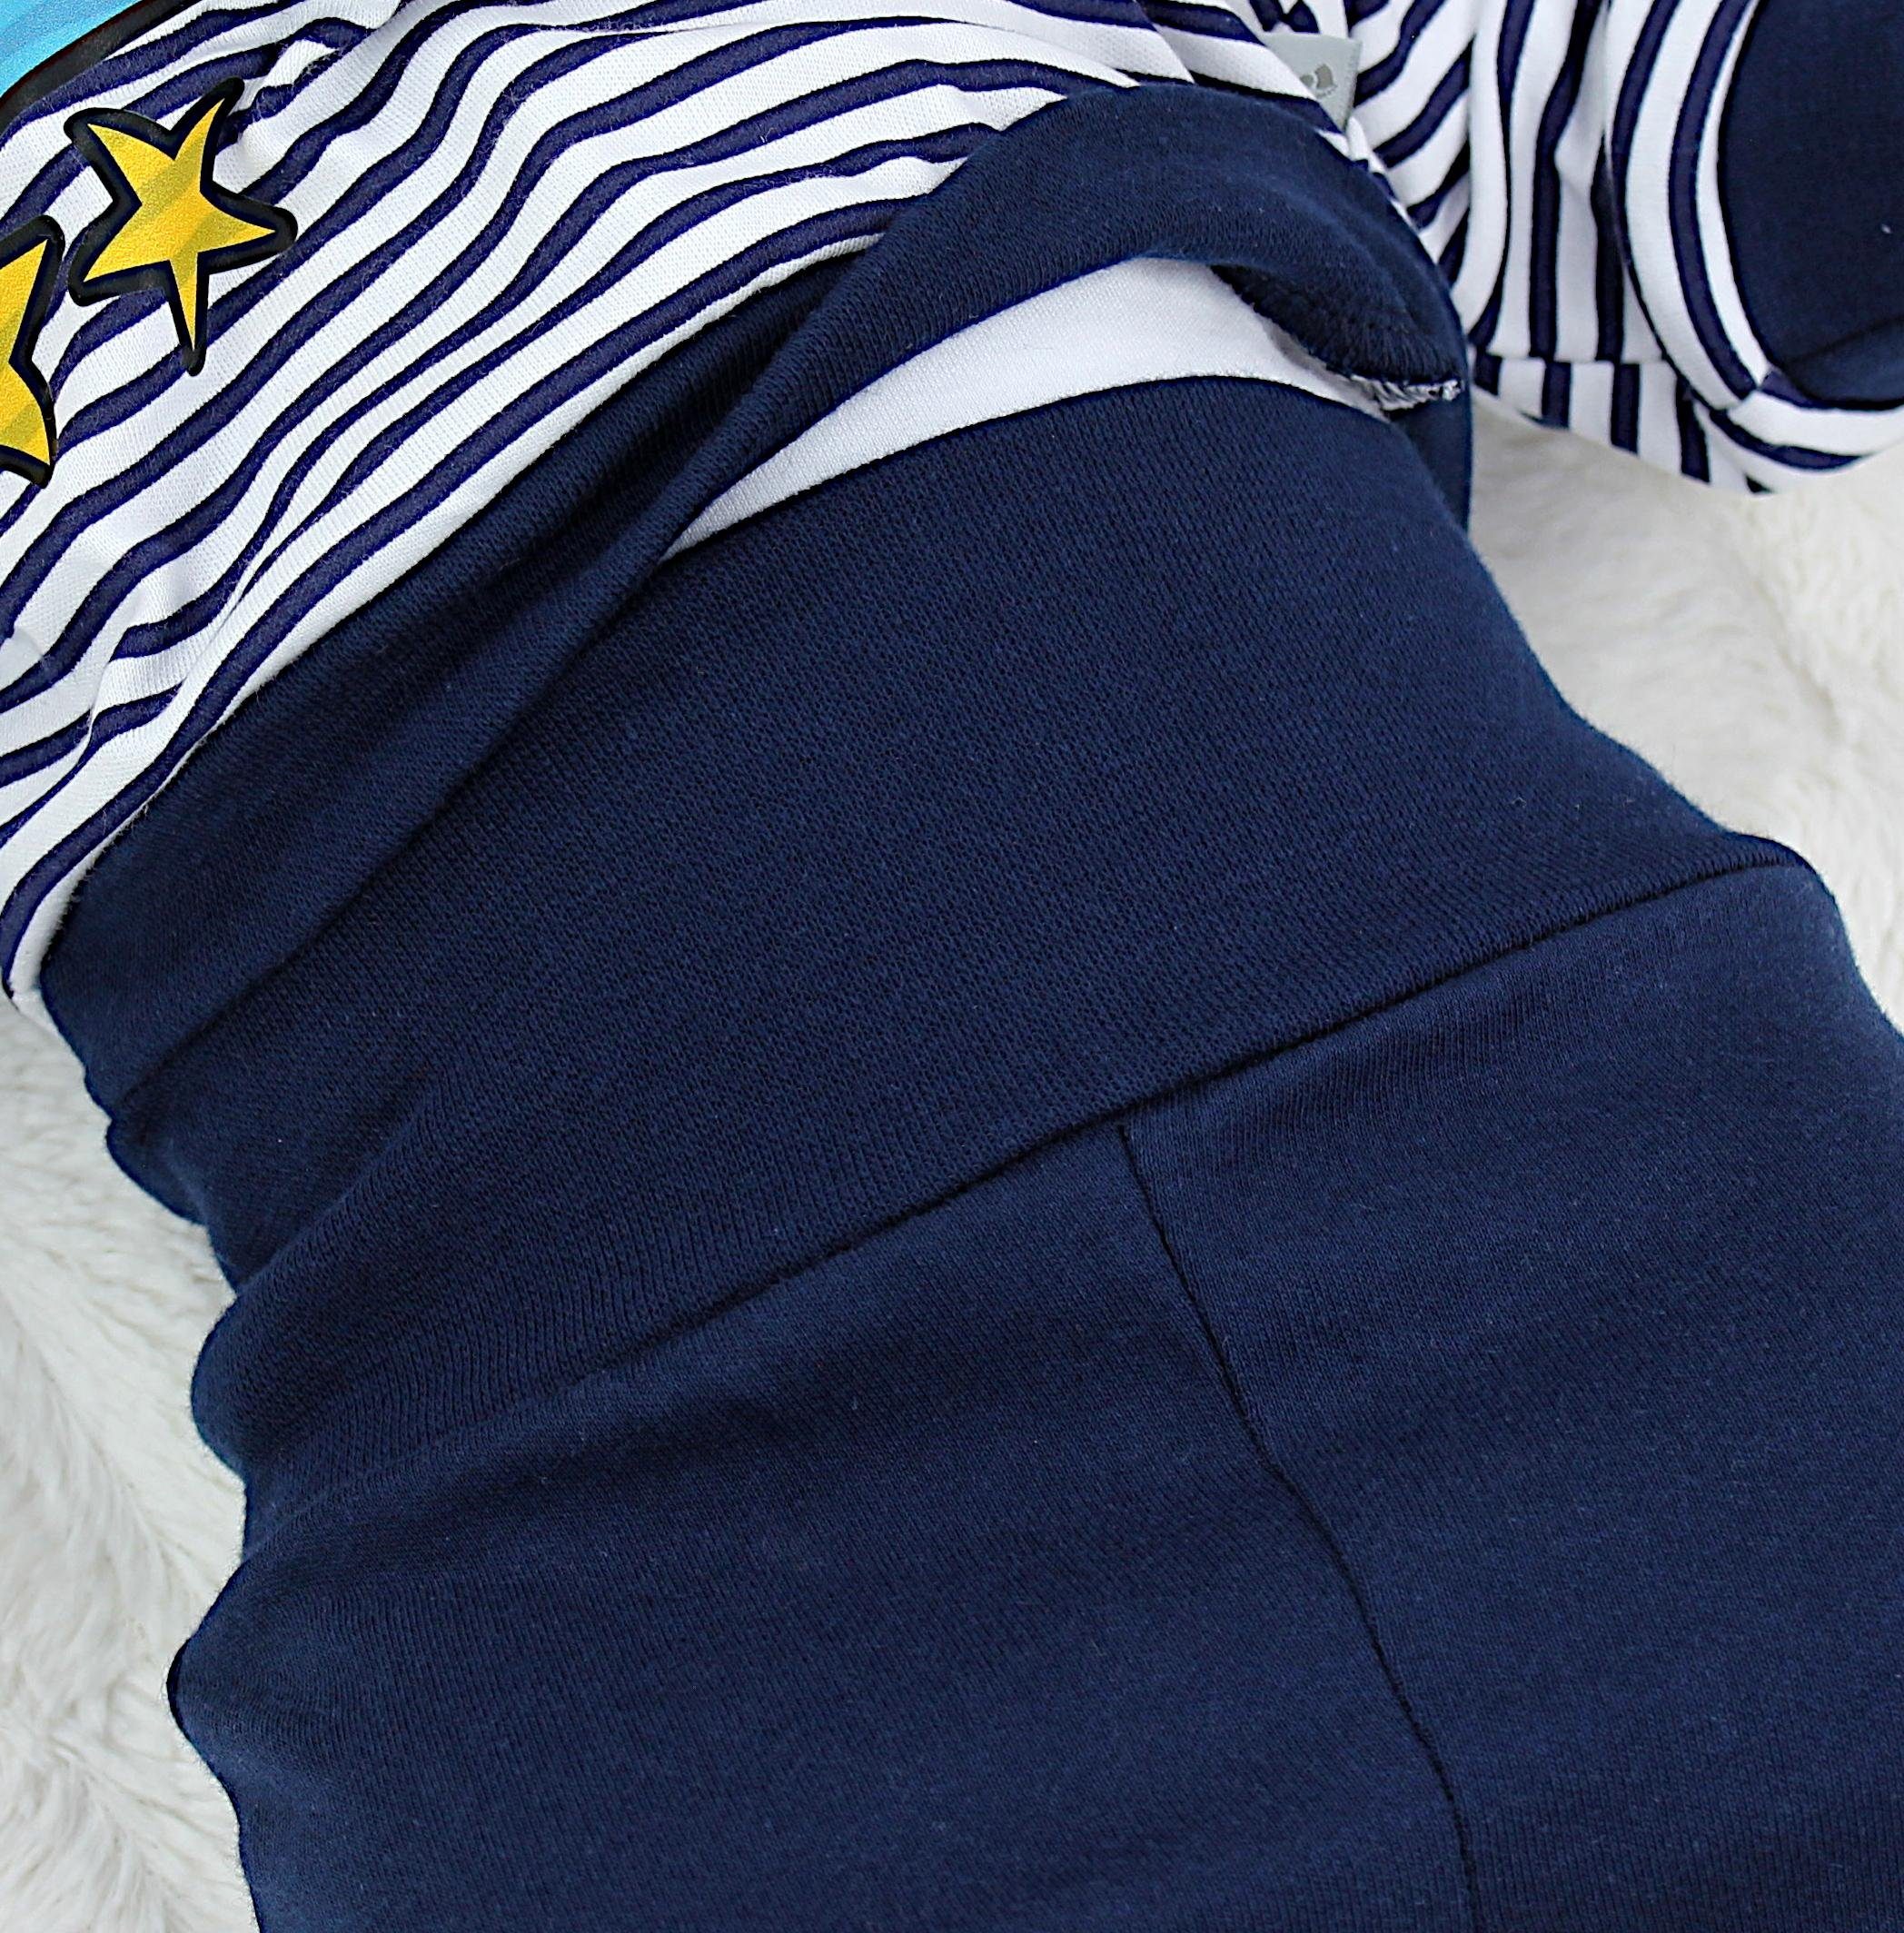 TupTam Erstausstattungspaket Baby Weiß Spruch Dunkelblau Super mit Print Streifen Langarmshirt Boy / Jungen Outfit Babyhose Babykleidung